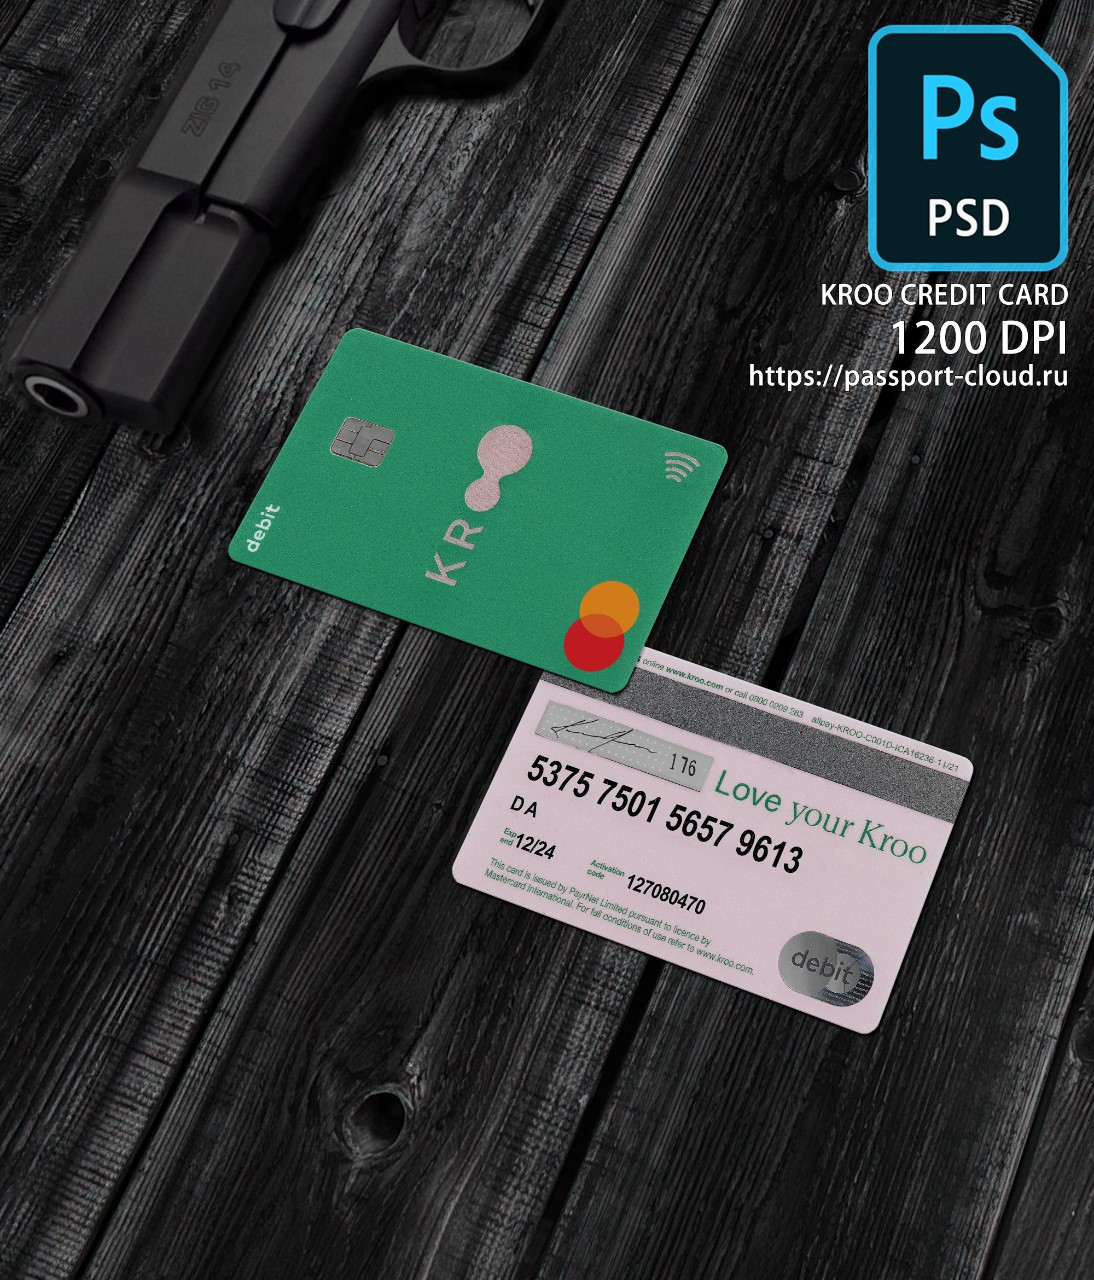 Kroo Credit Card PSD1